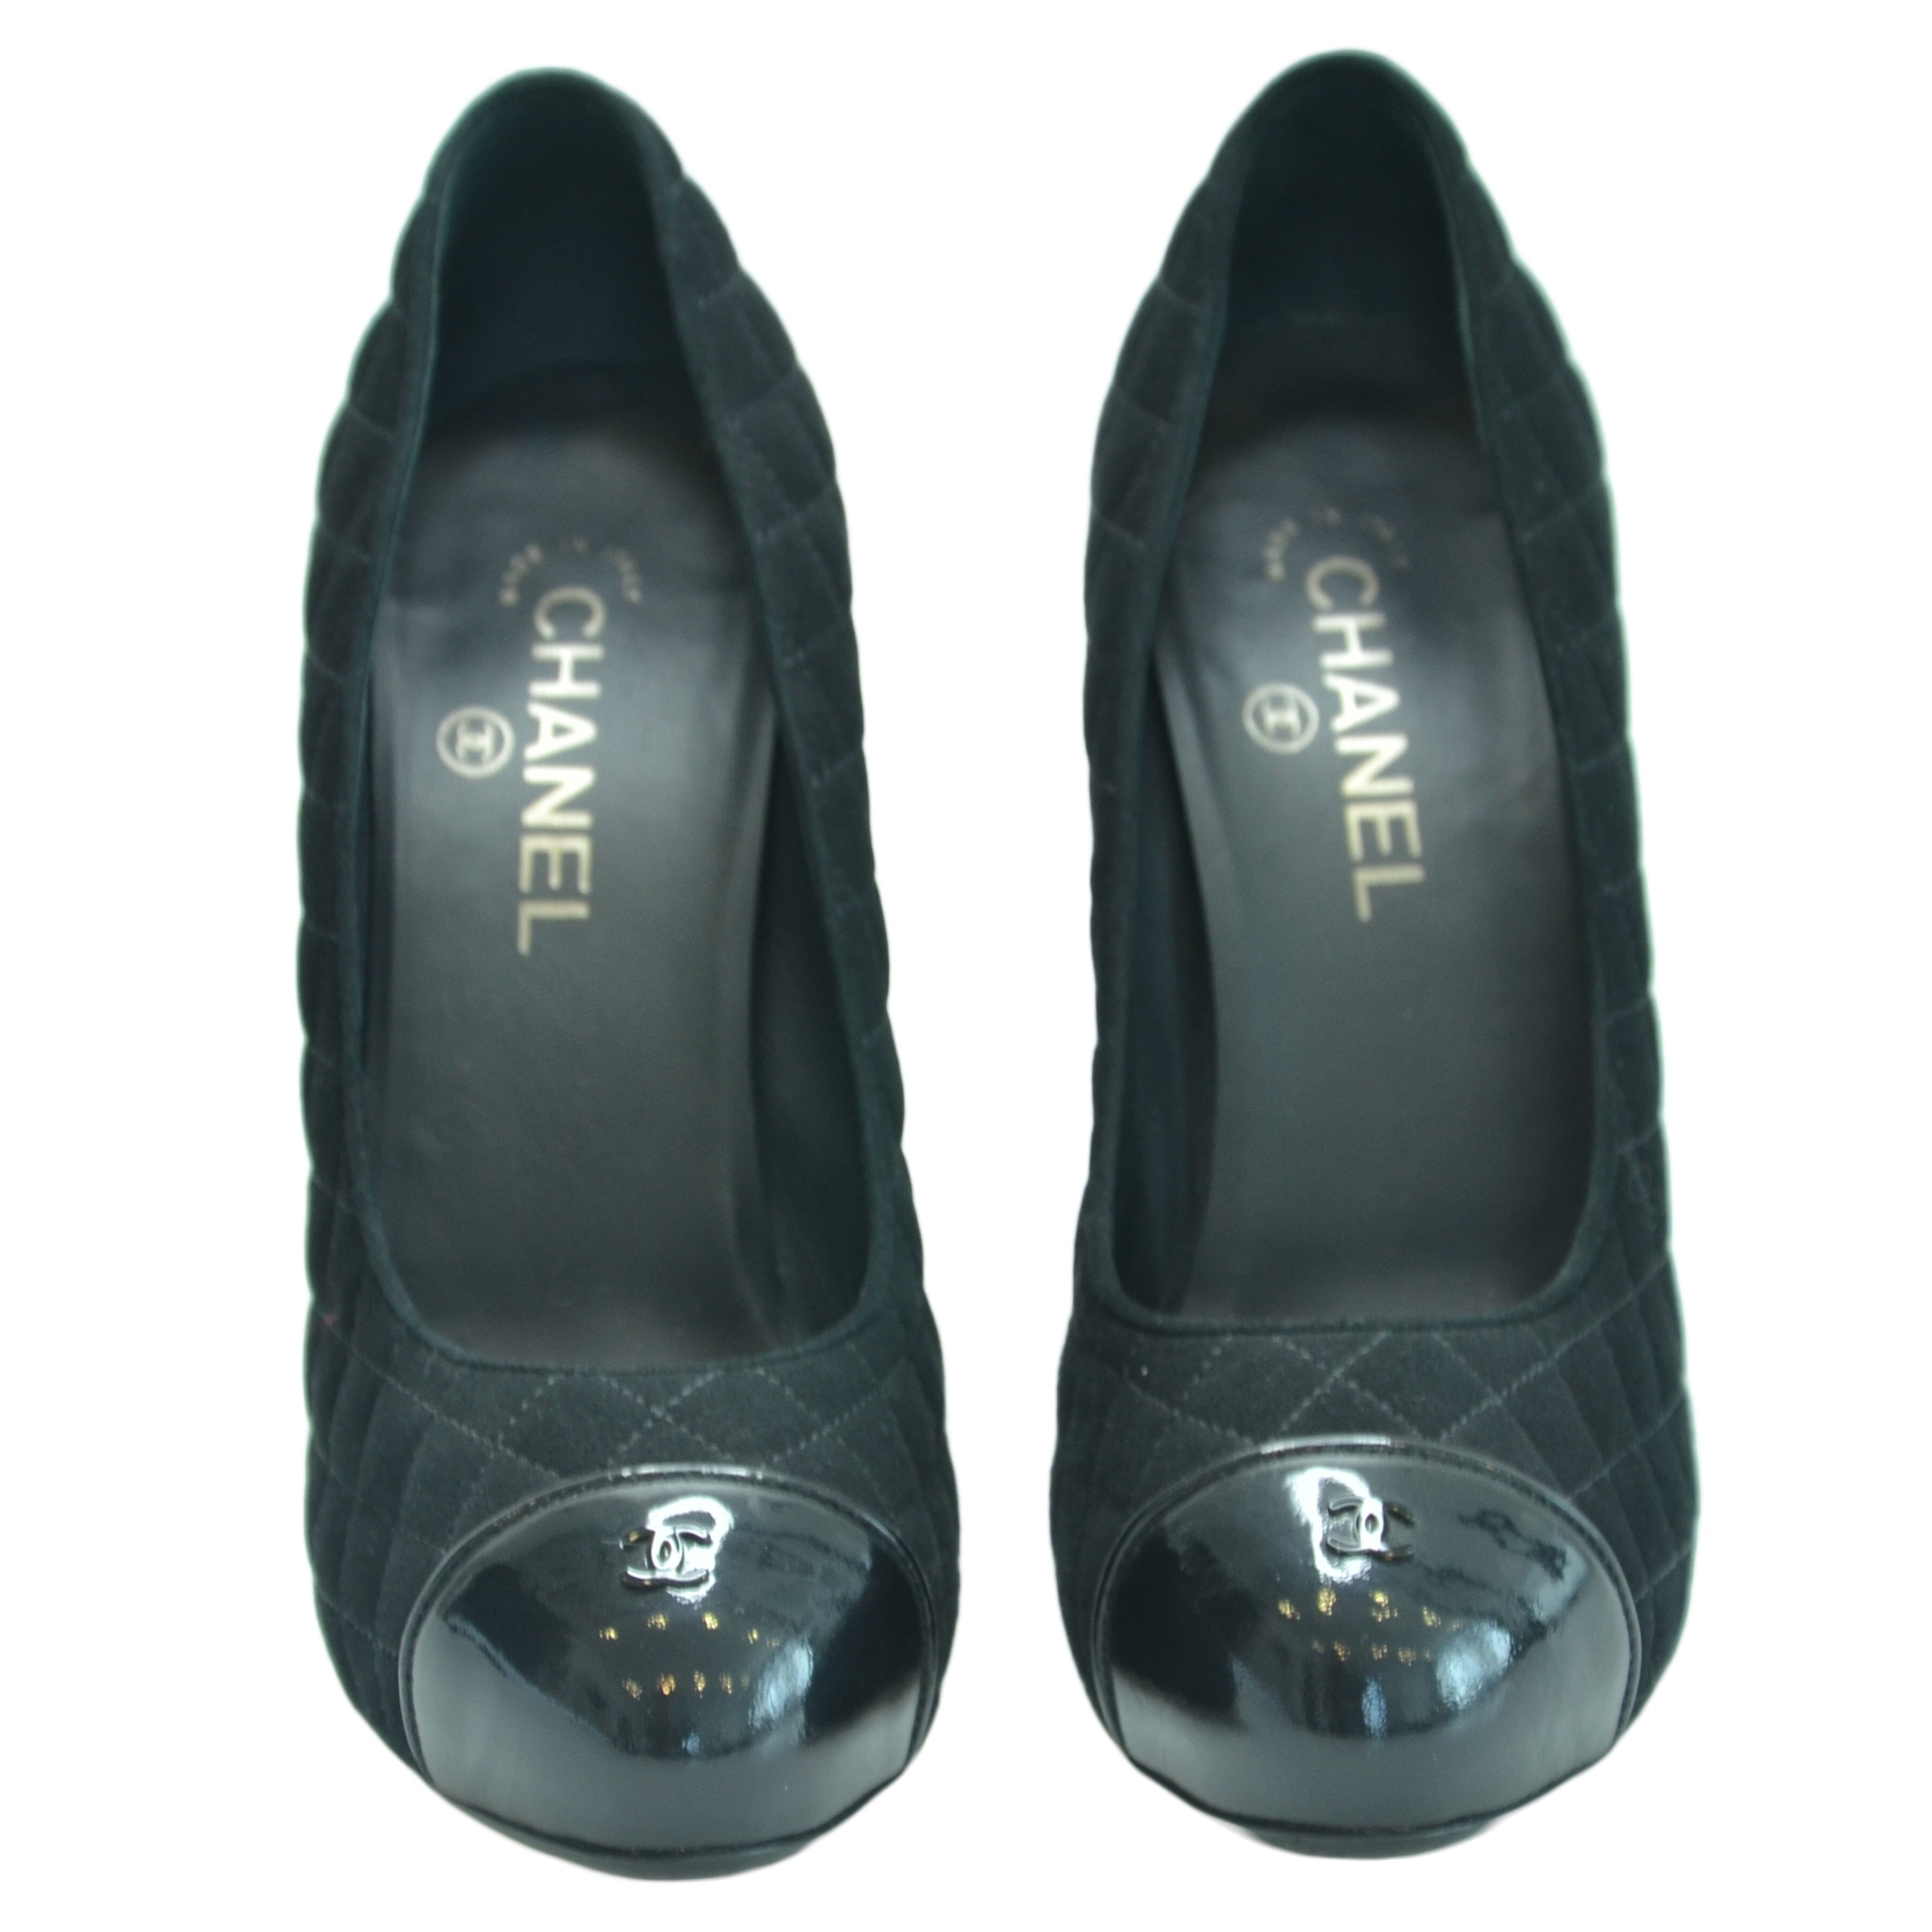 Black CC Cap-Toe Quilted Platform Pumps Shoes Chanel 